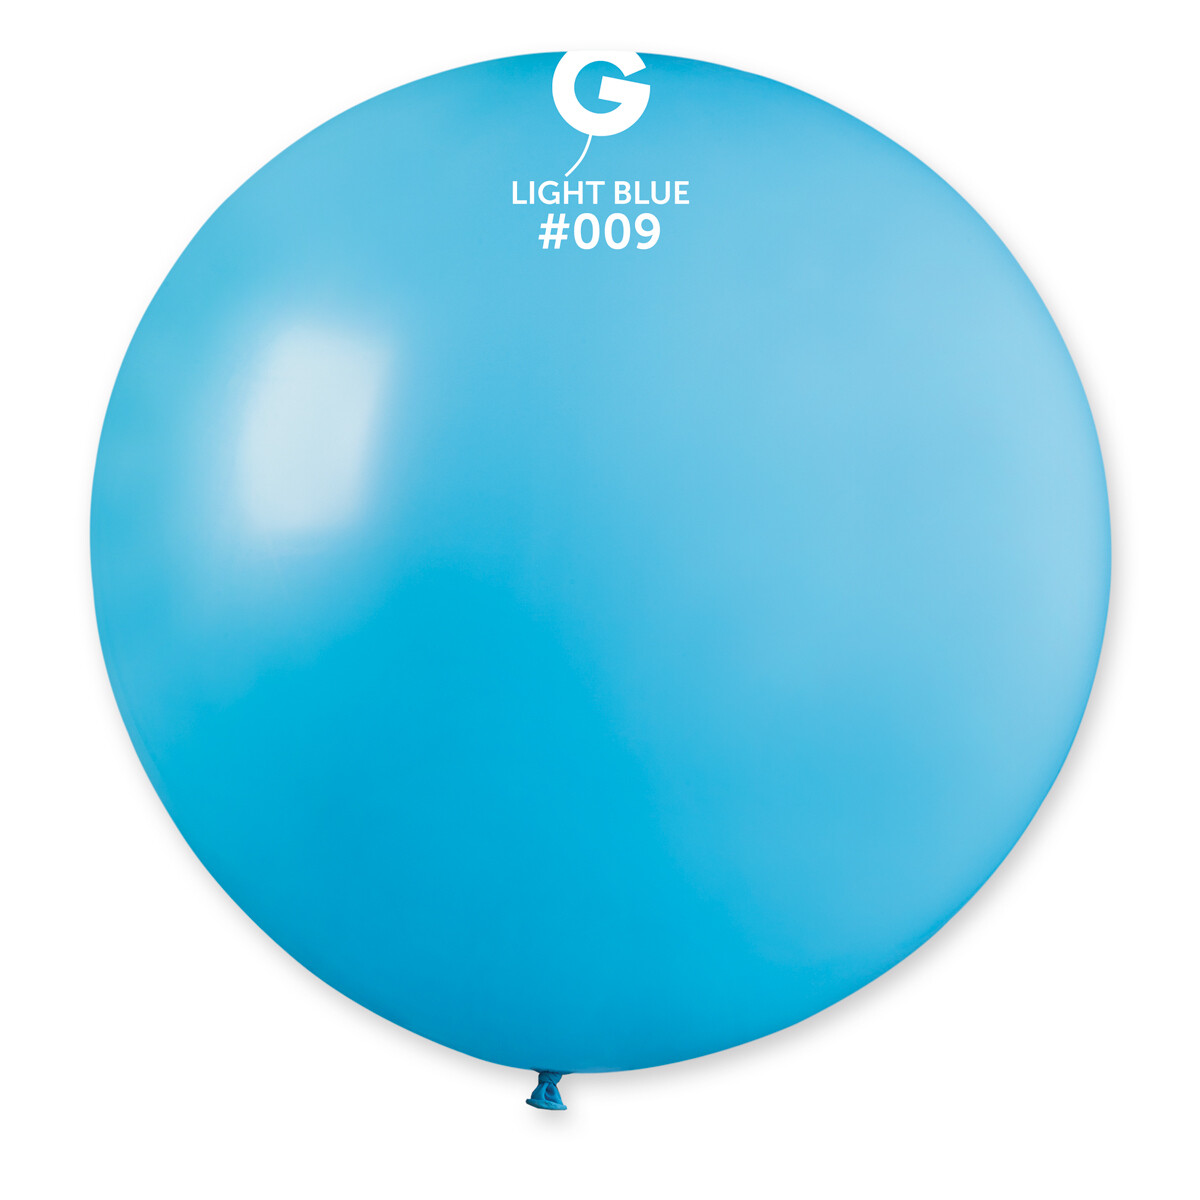 Gemar Latex Balloons Standard Light Blue #009 31in - 1 piece